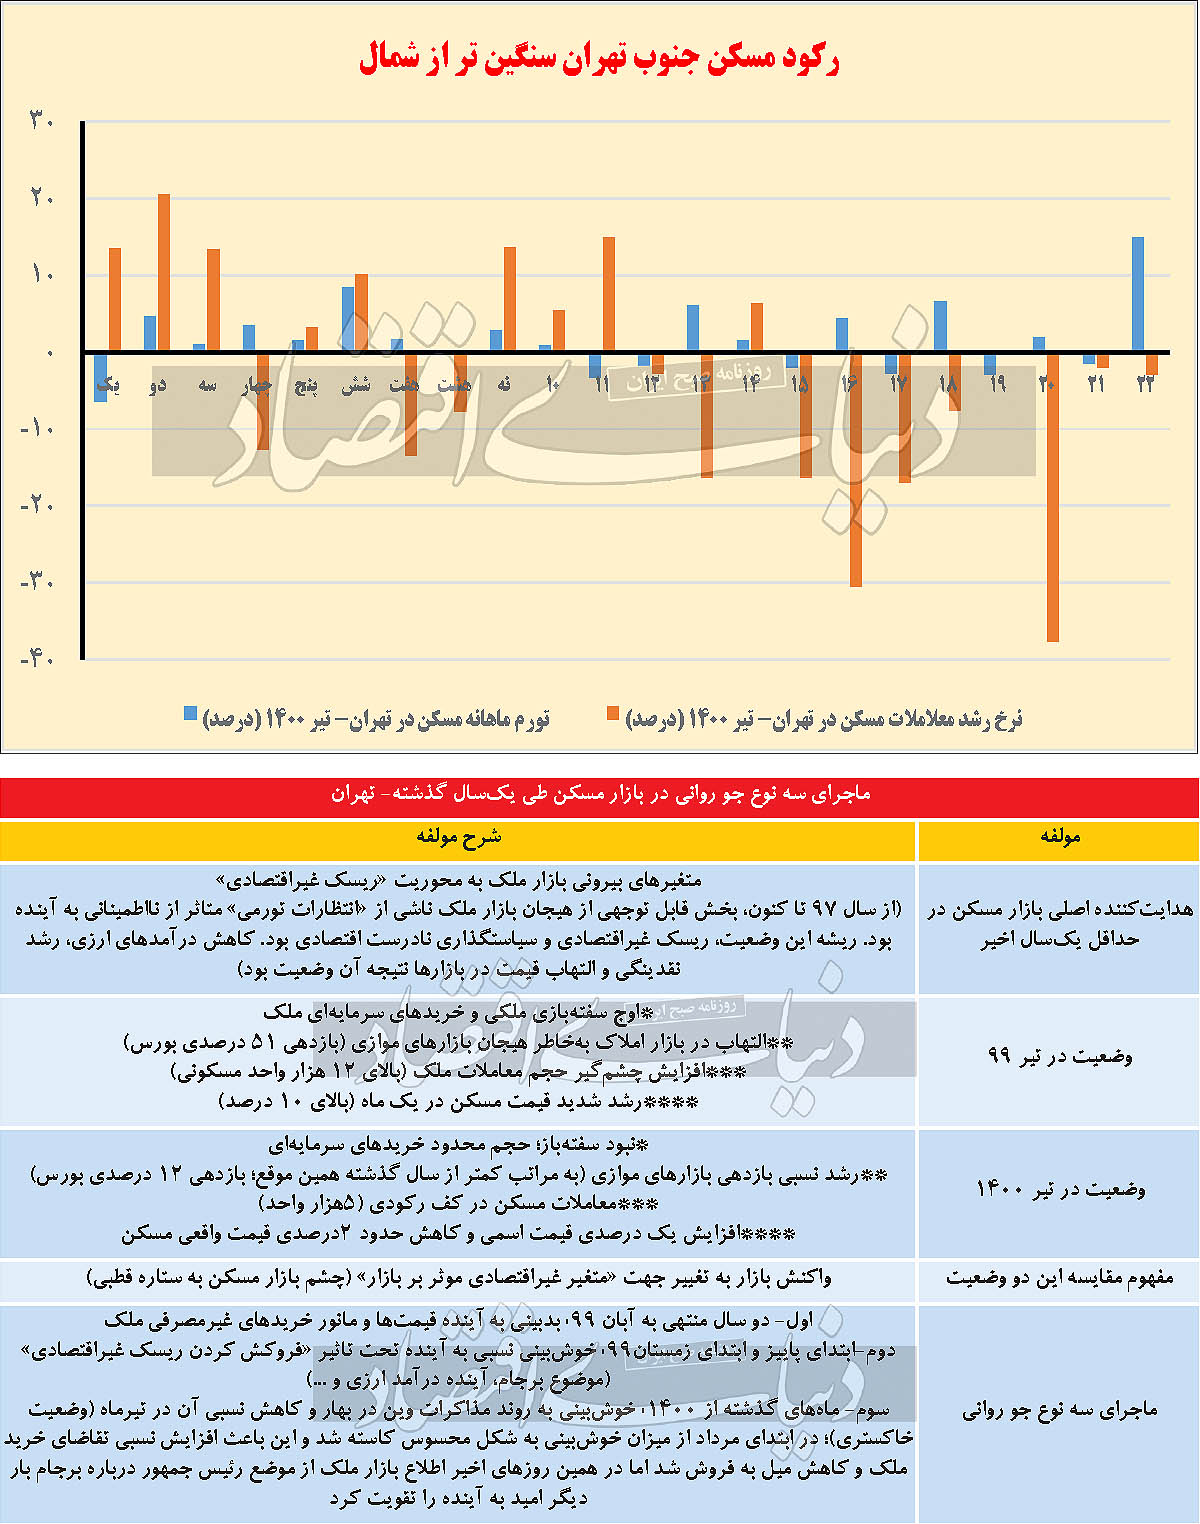 نمودار تغییرات معاملات بازار مسکن مناطق ۲۲ گانه تهران